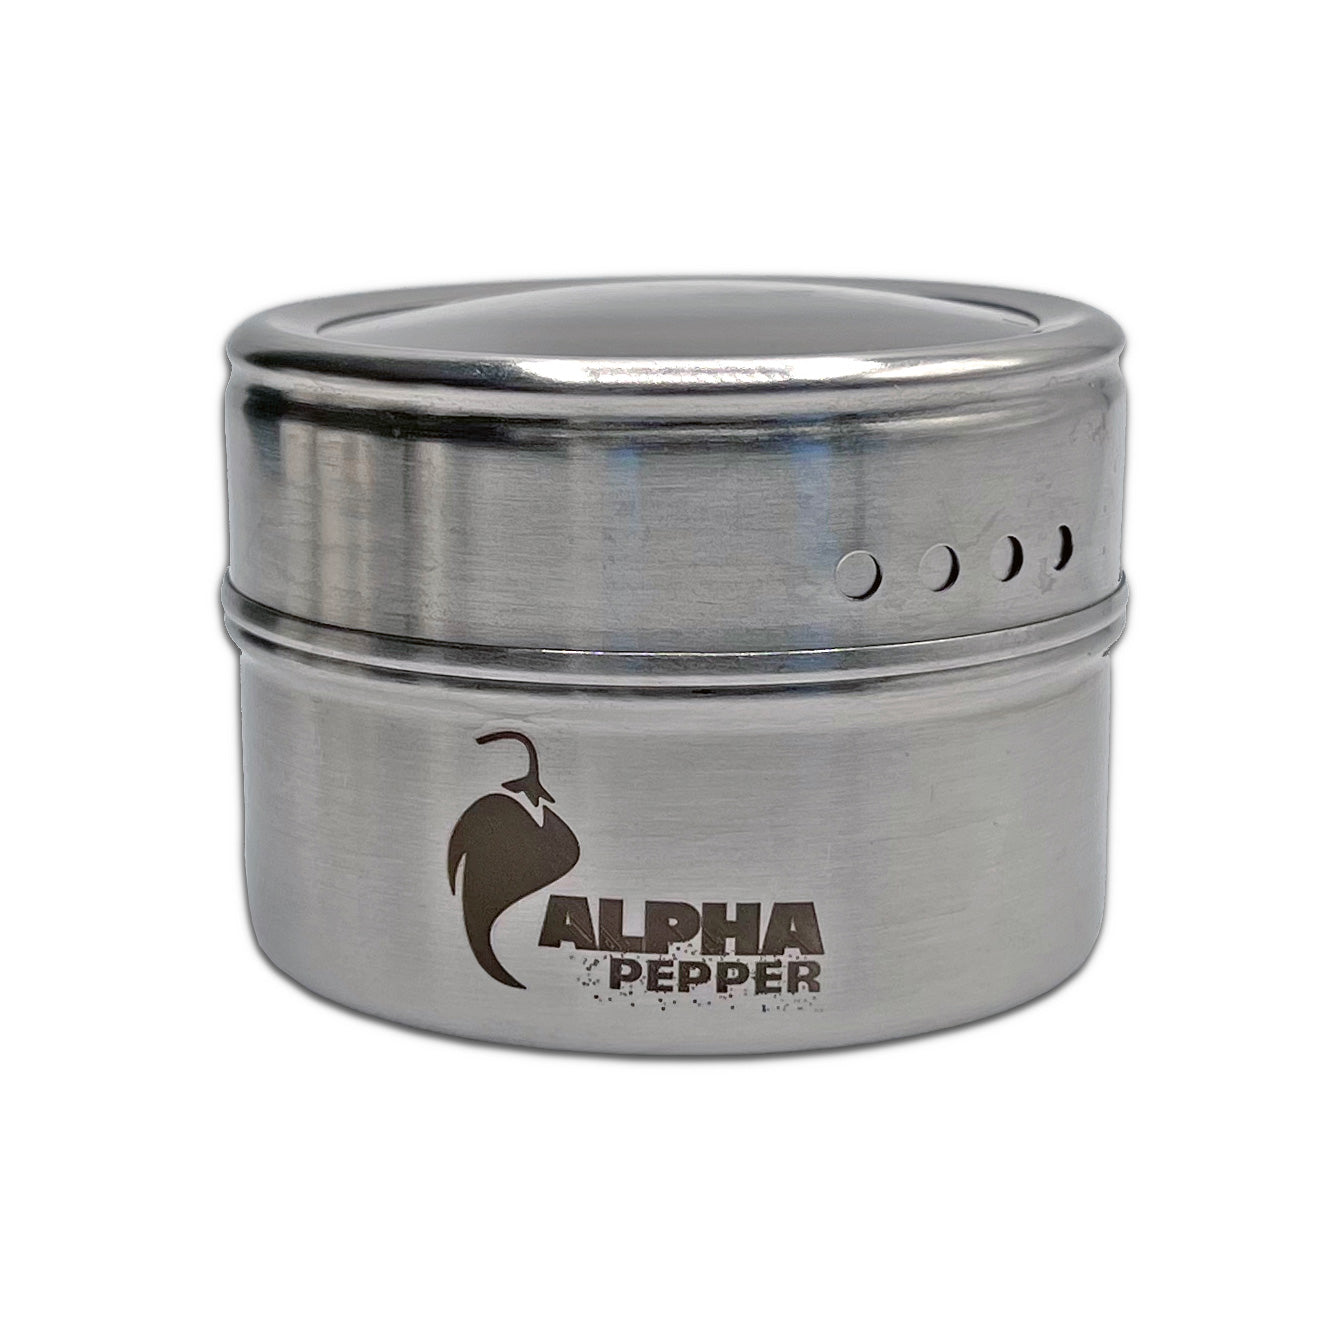 Alpha Pepper Tin